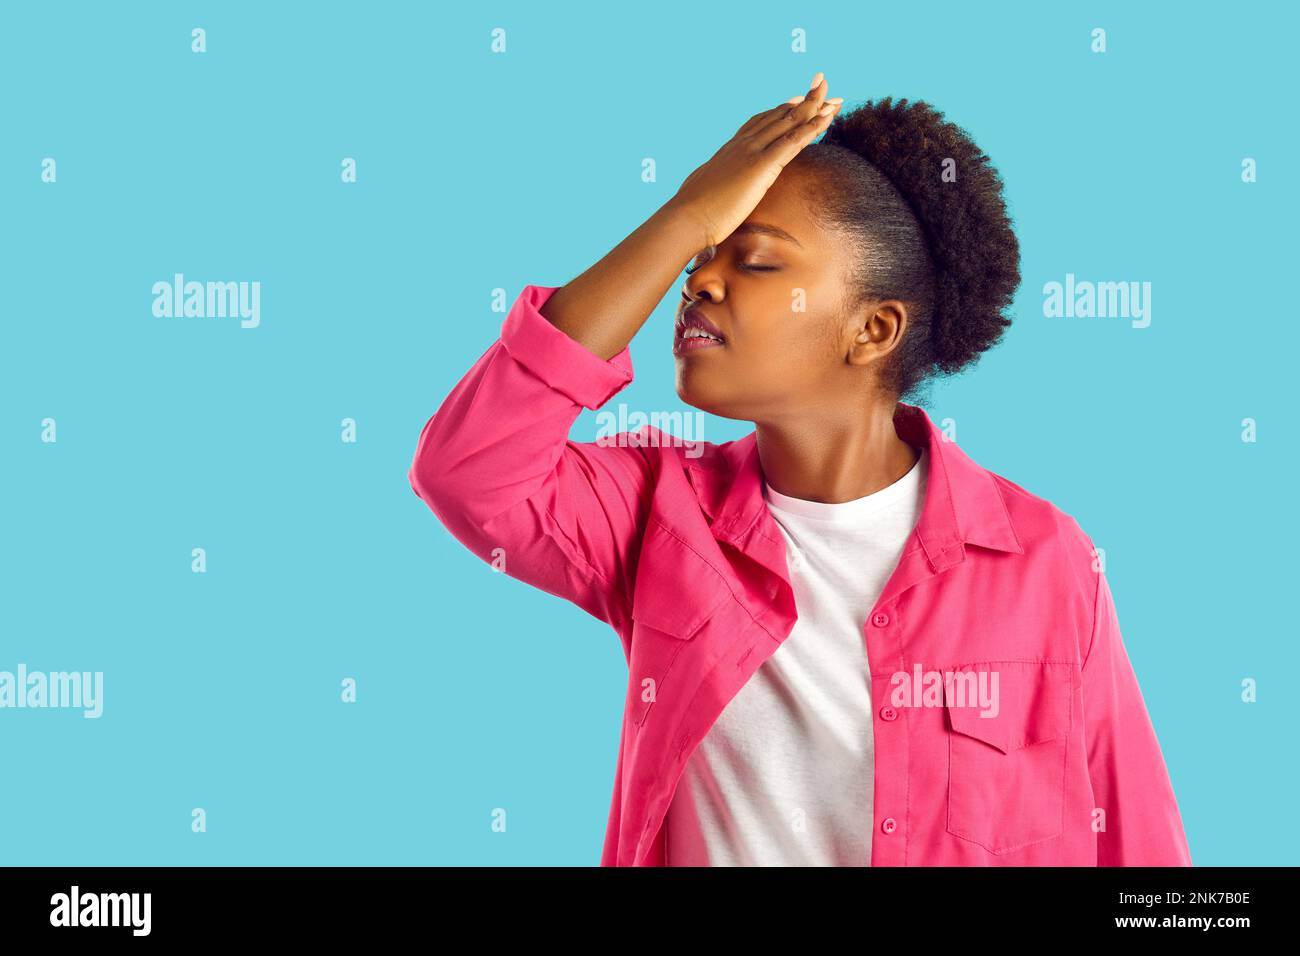 La giovane donna afroamericana sta mostrando un gesto facciale su sfondo blu. Foto Stock